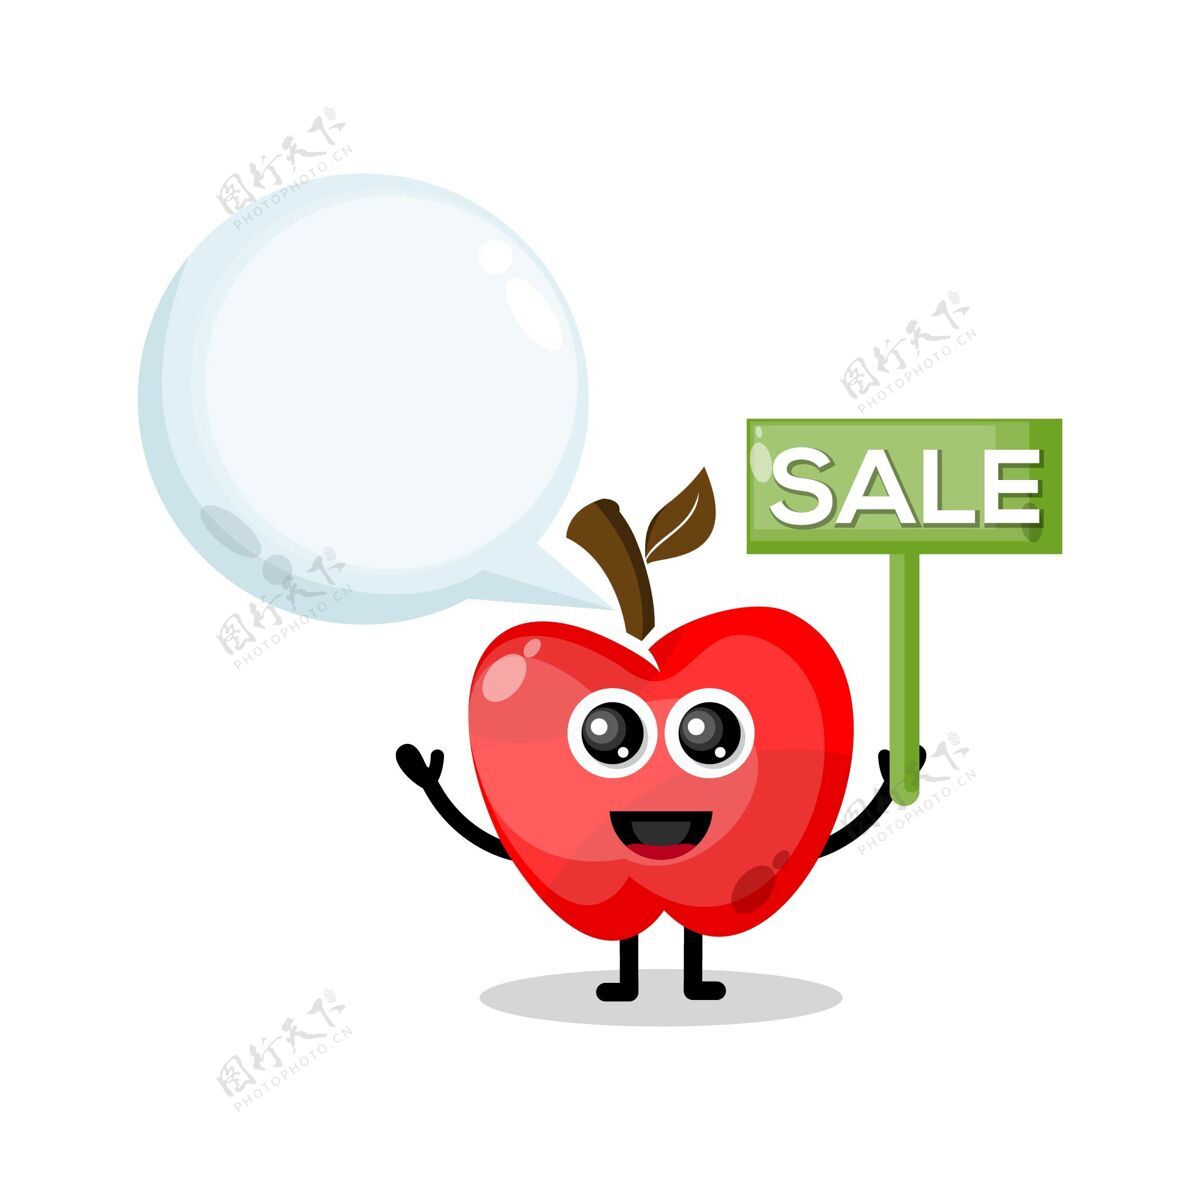 吉祥物标志苹果销售吉祥物字符标志语音泡泡苹果成熟